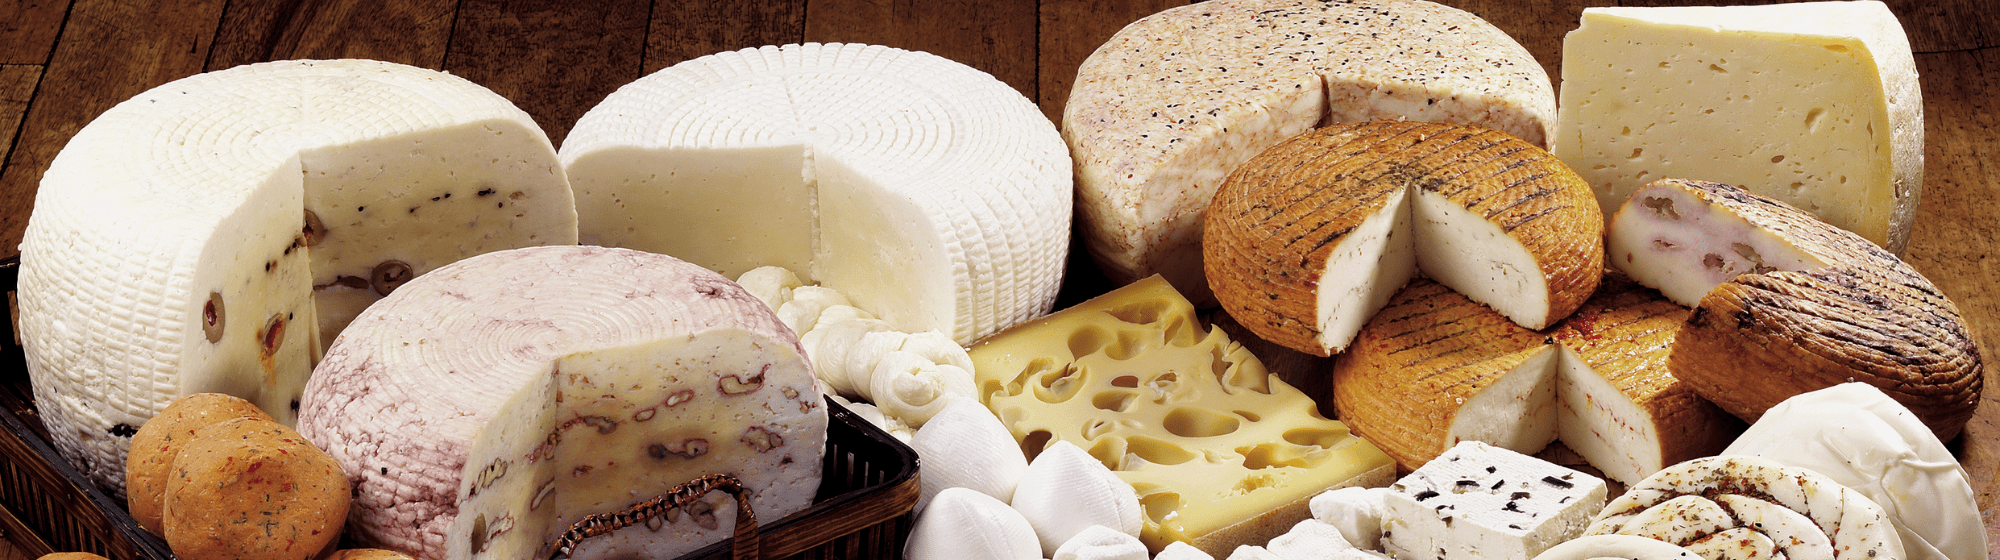 A cheese board